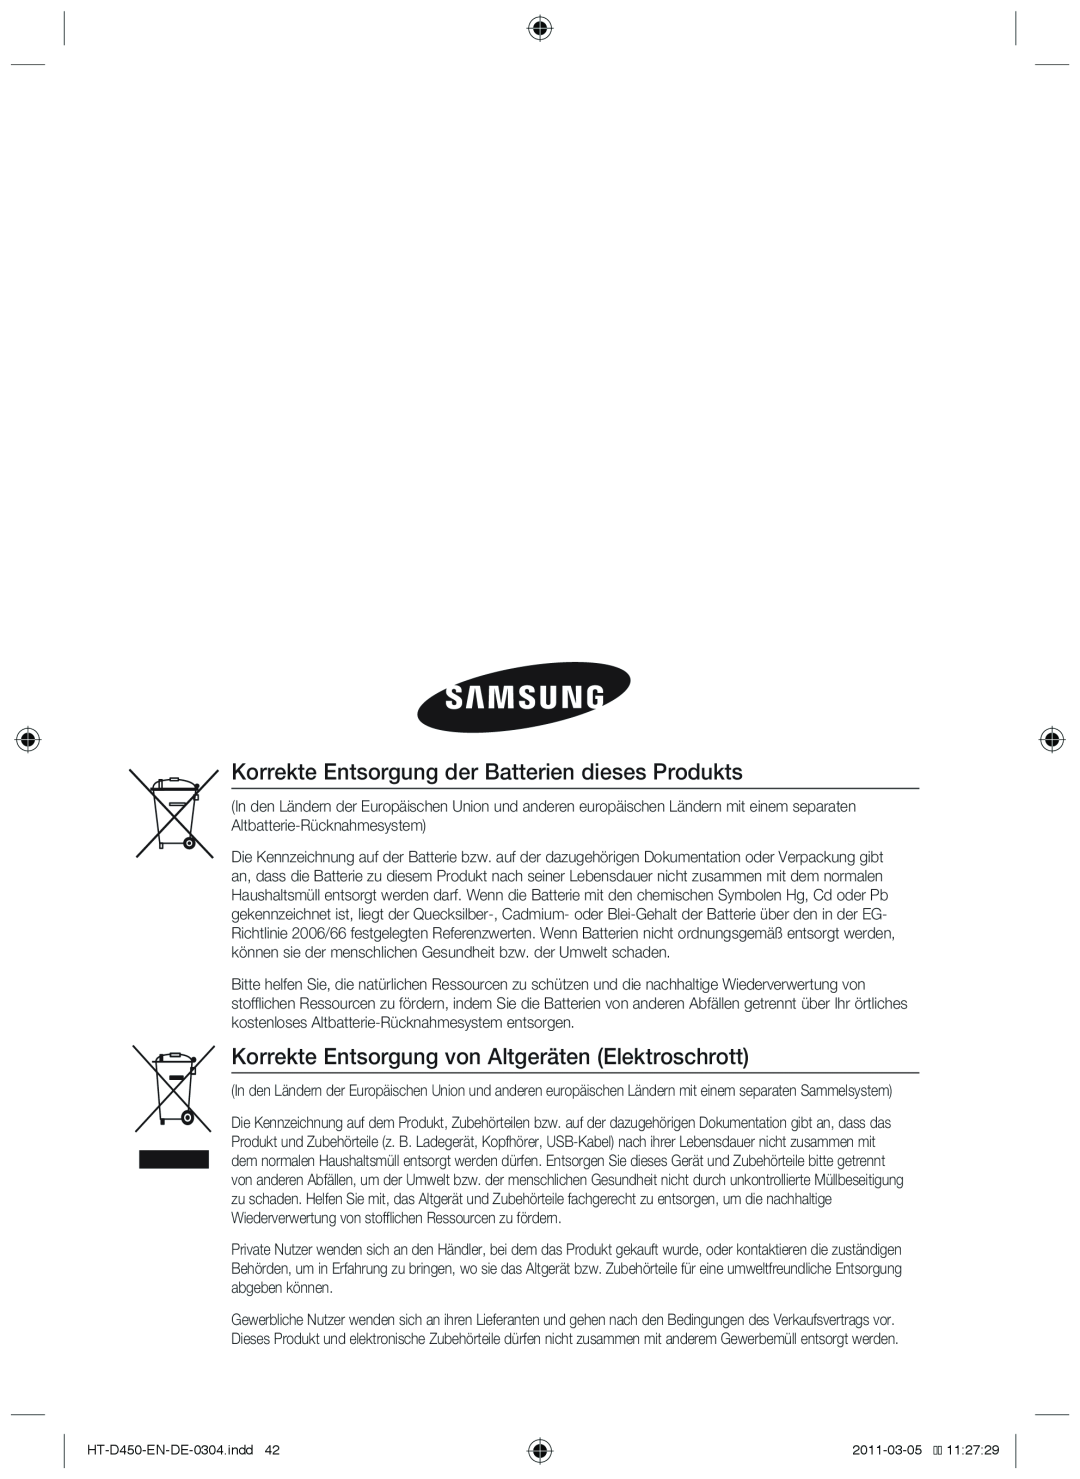 Samsung HT-D450 Korrekte Entsorgung der Batterien dieses Produkts, Korrekte Entsorgung von Altgeräten Elektroschrott 